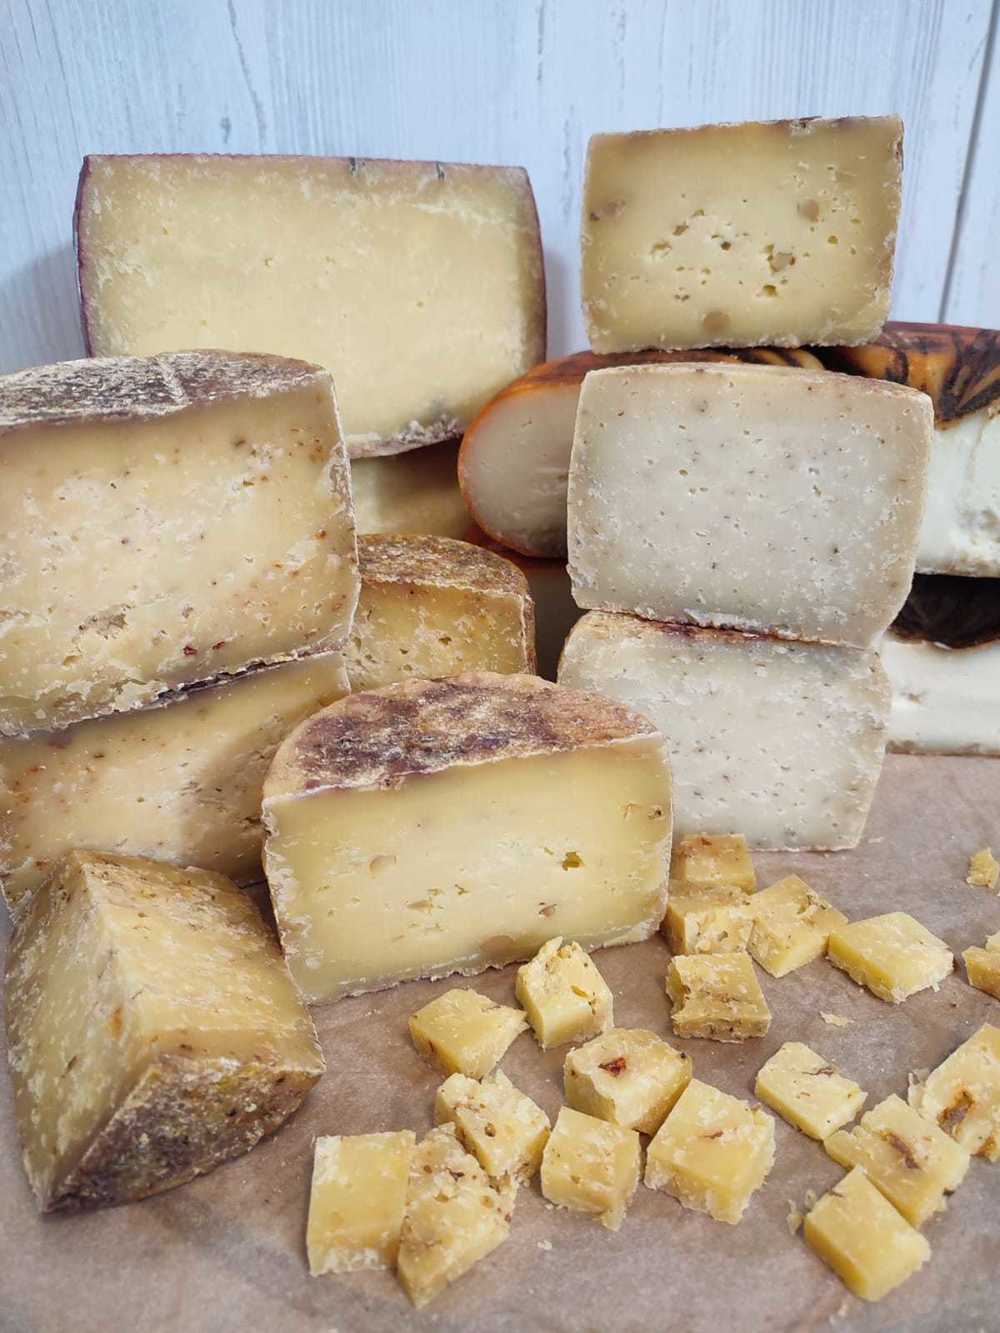 Импортозамещение: сыр от воронежской семьи Елисеевых может поспорить с качеством западной продукции